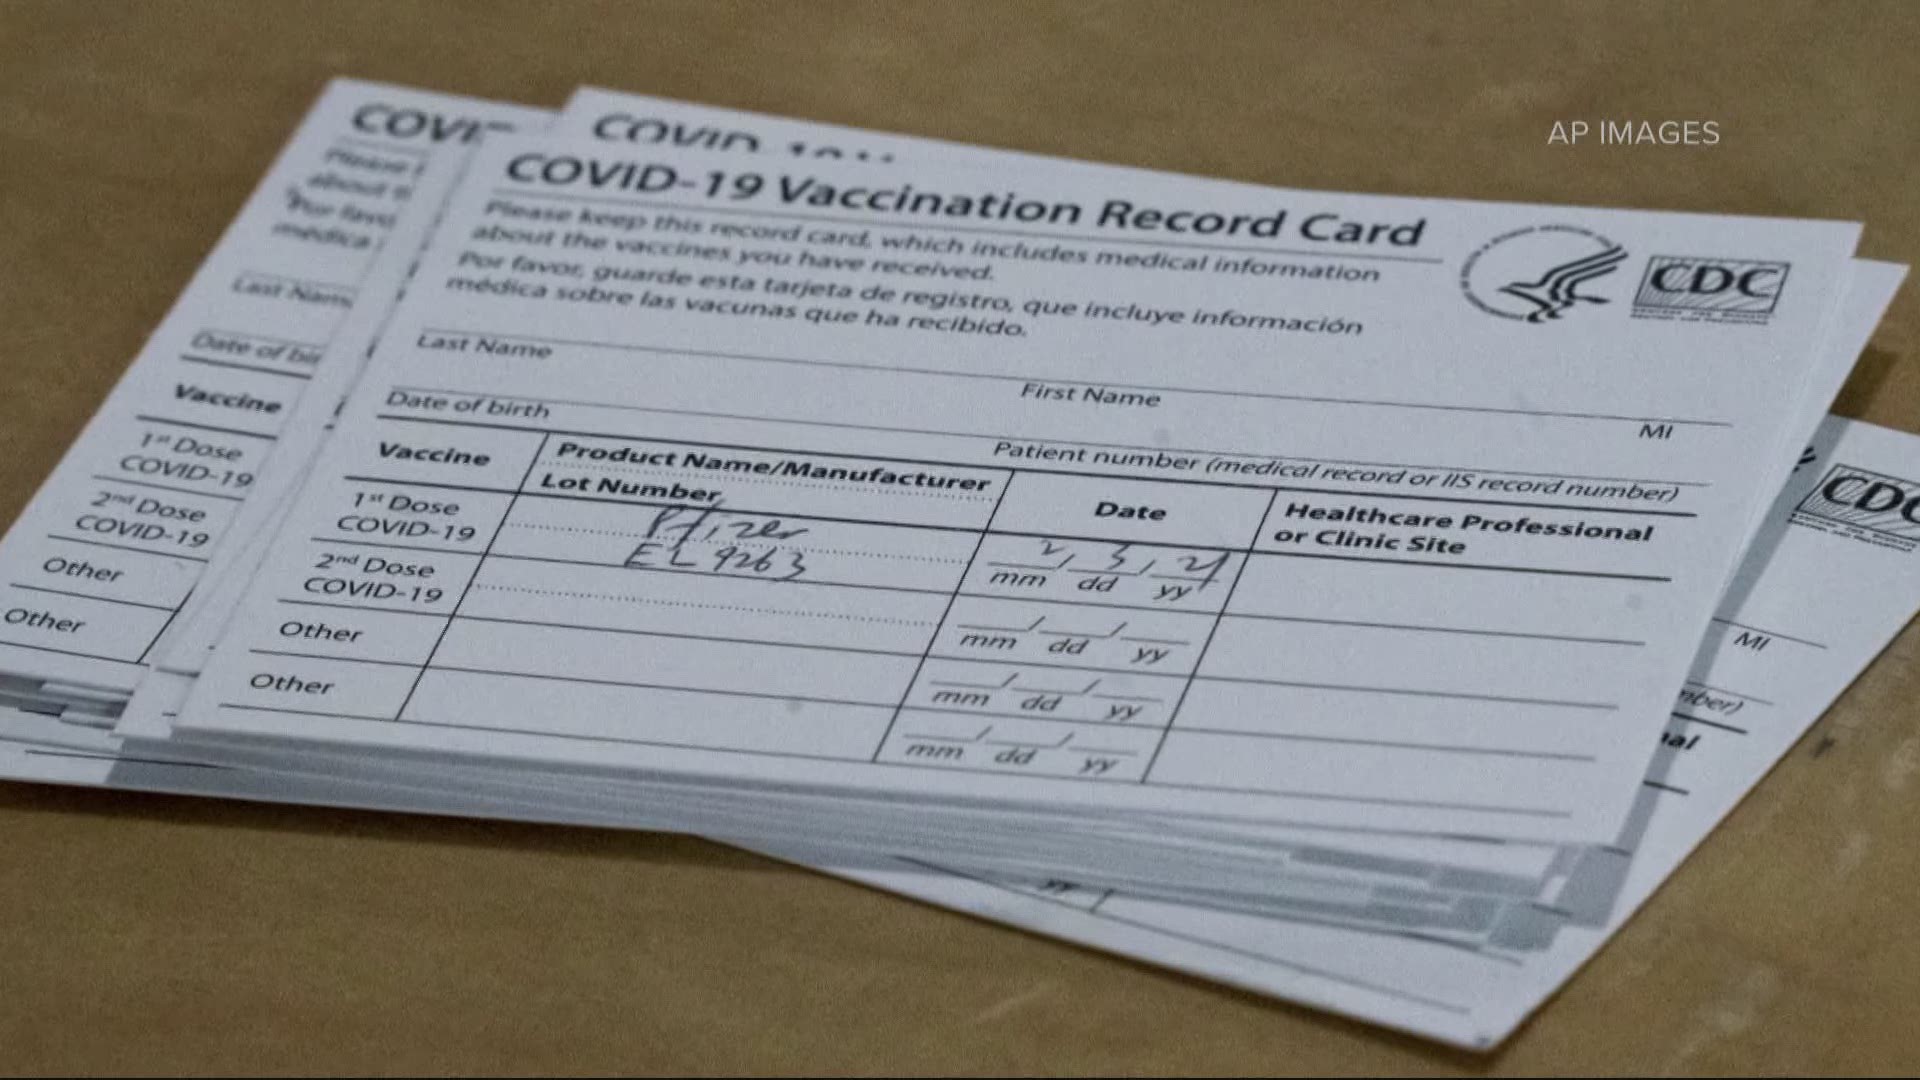 schedule covid vaccine rite aid